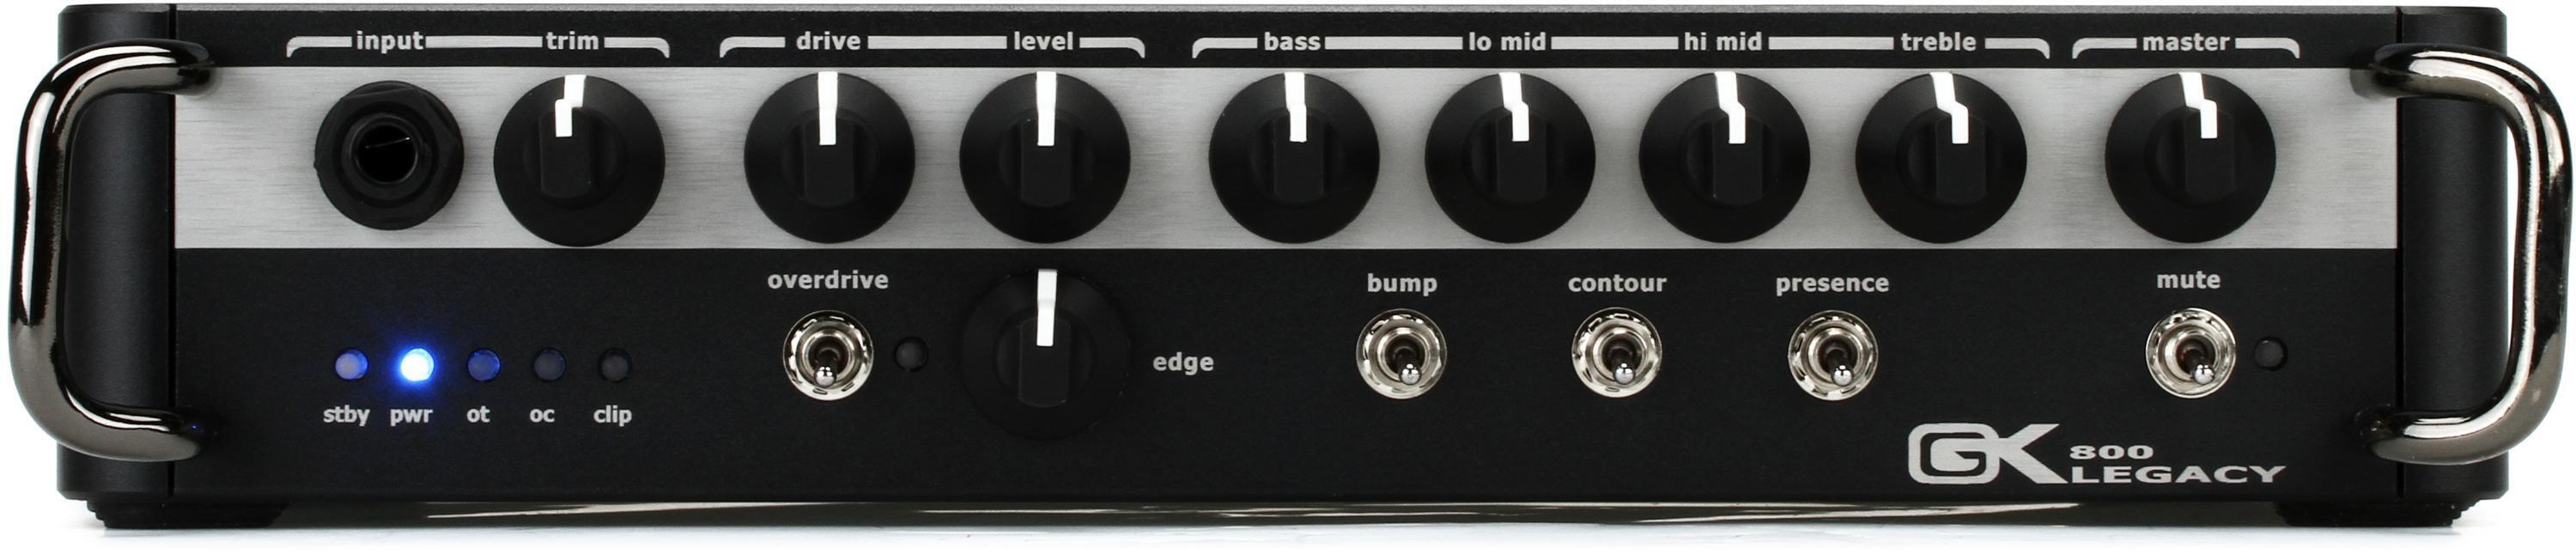 Bundled Item: Gallien-Krueger Legacy 800 - 800-watt Ultra Light Bass Head